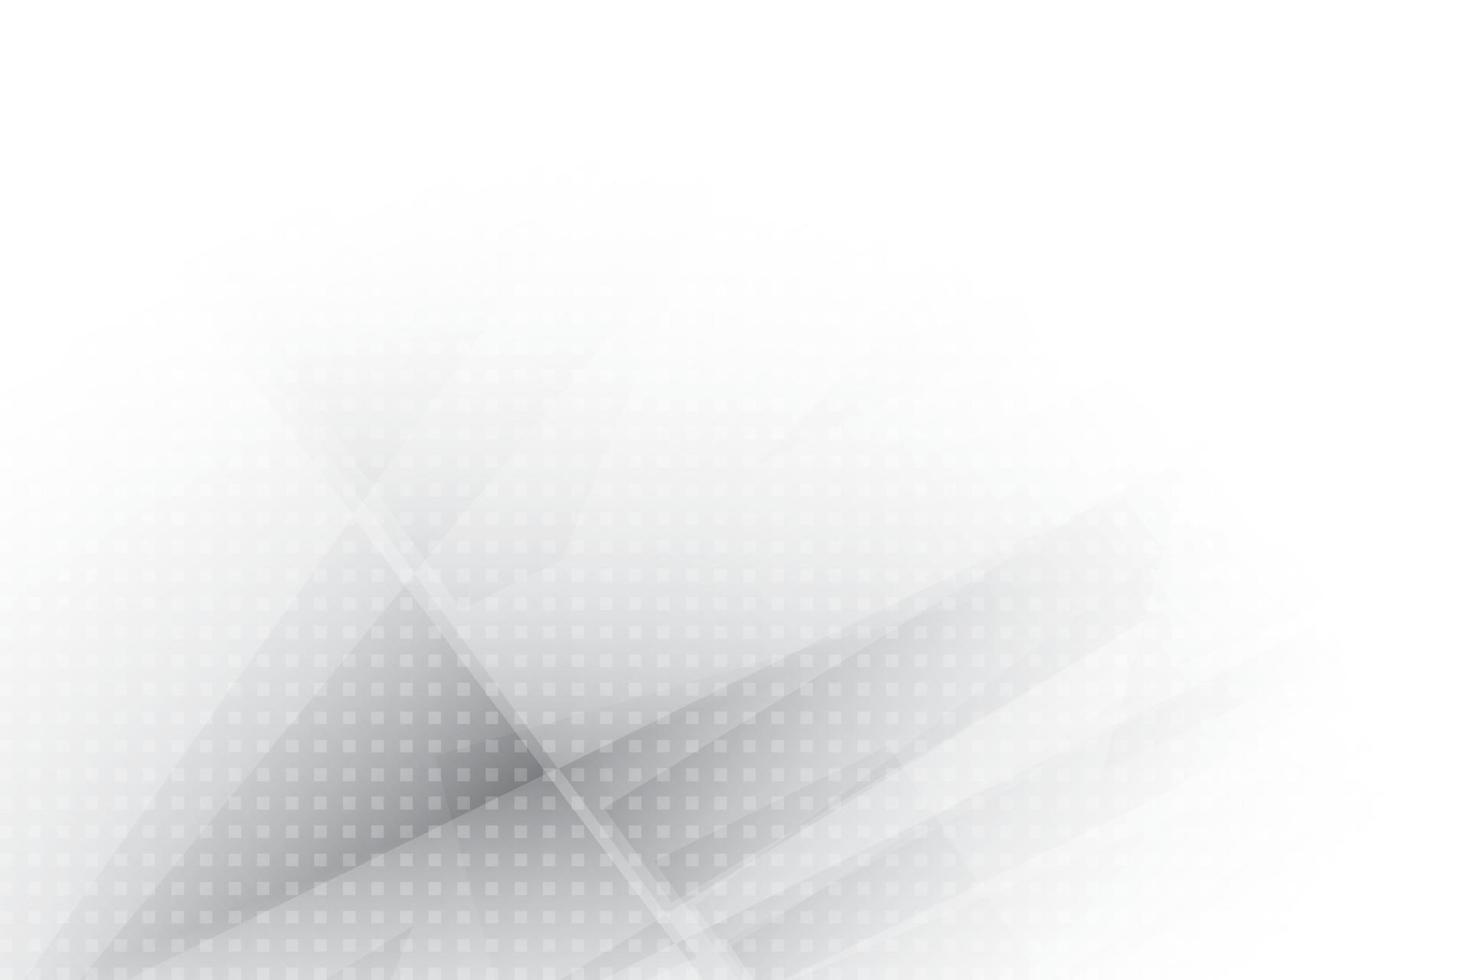 couleur blanche et grise abstraite, arrière-plan design moderne avec effet de demi-teintes, motif à pois. illustration vectorielle. vecteur